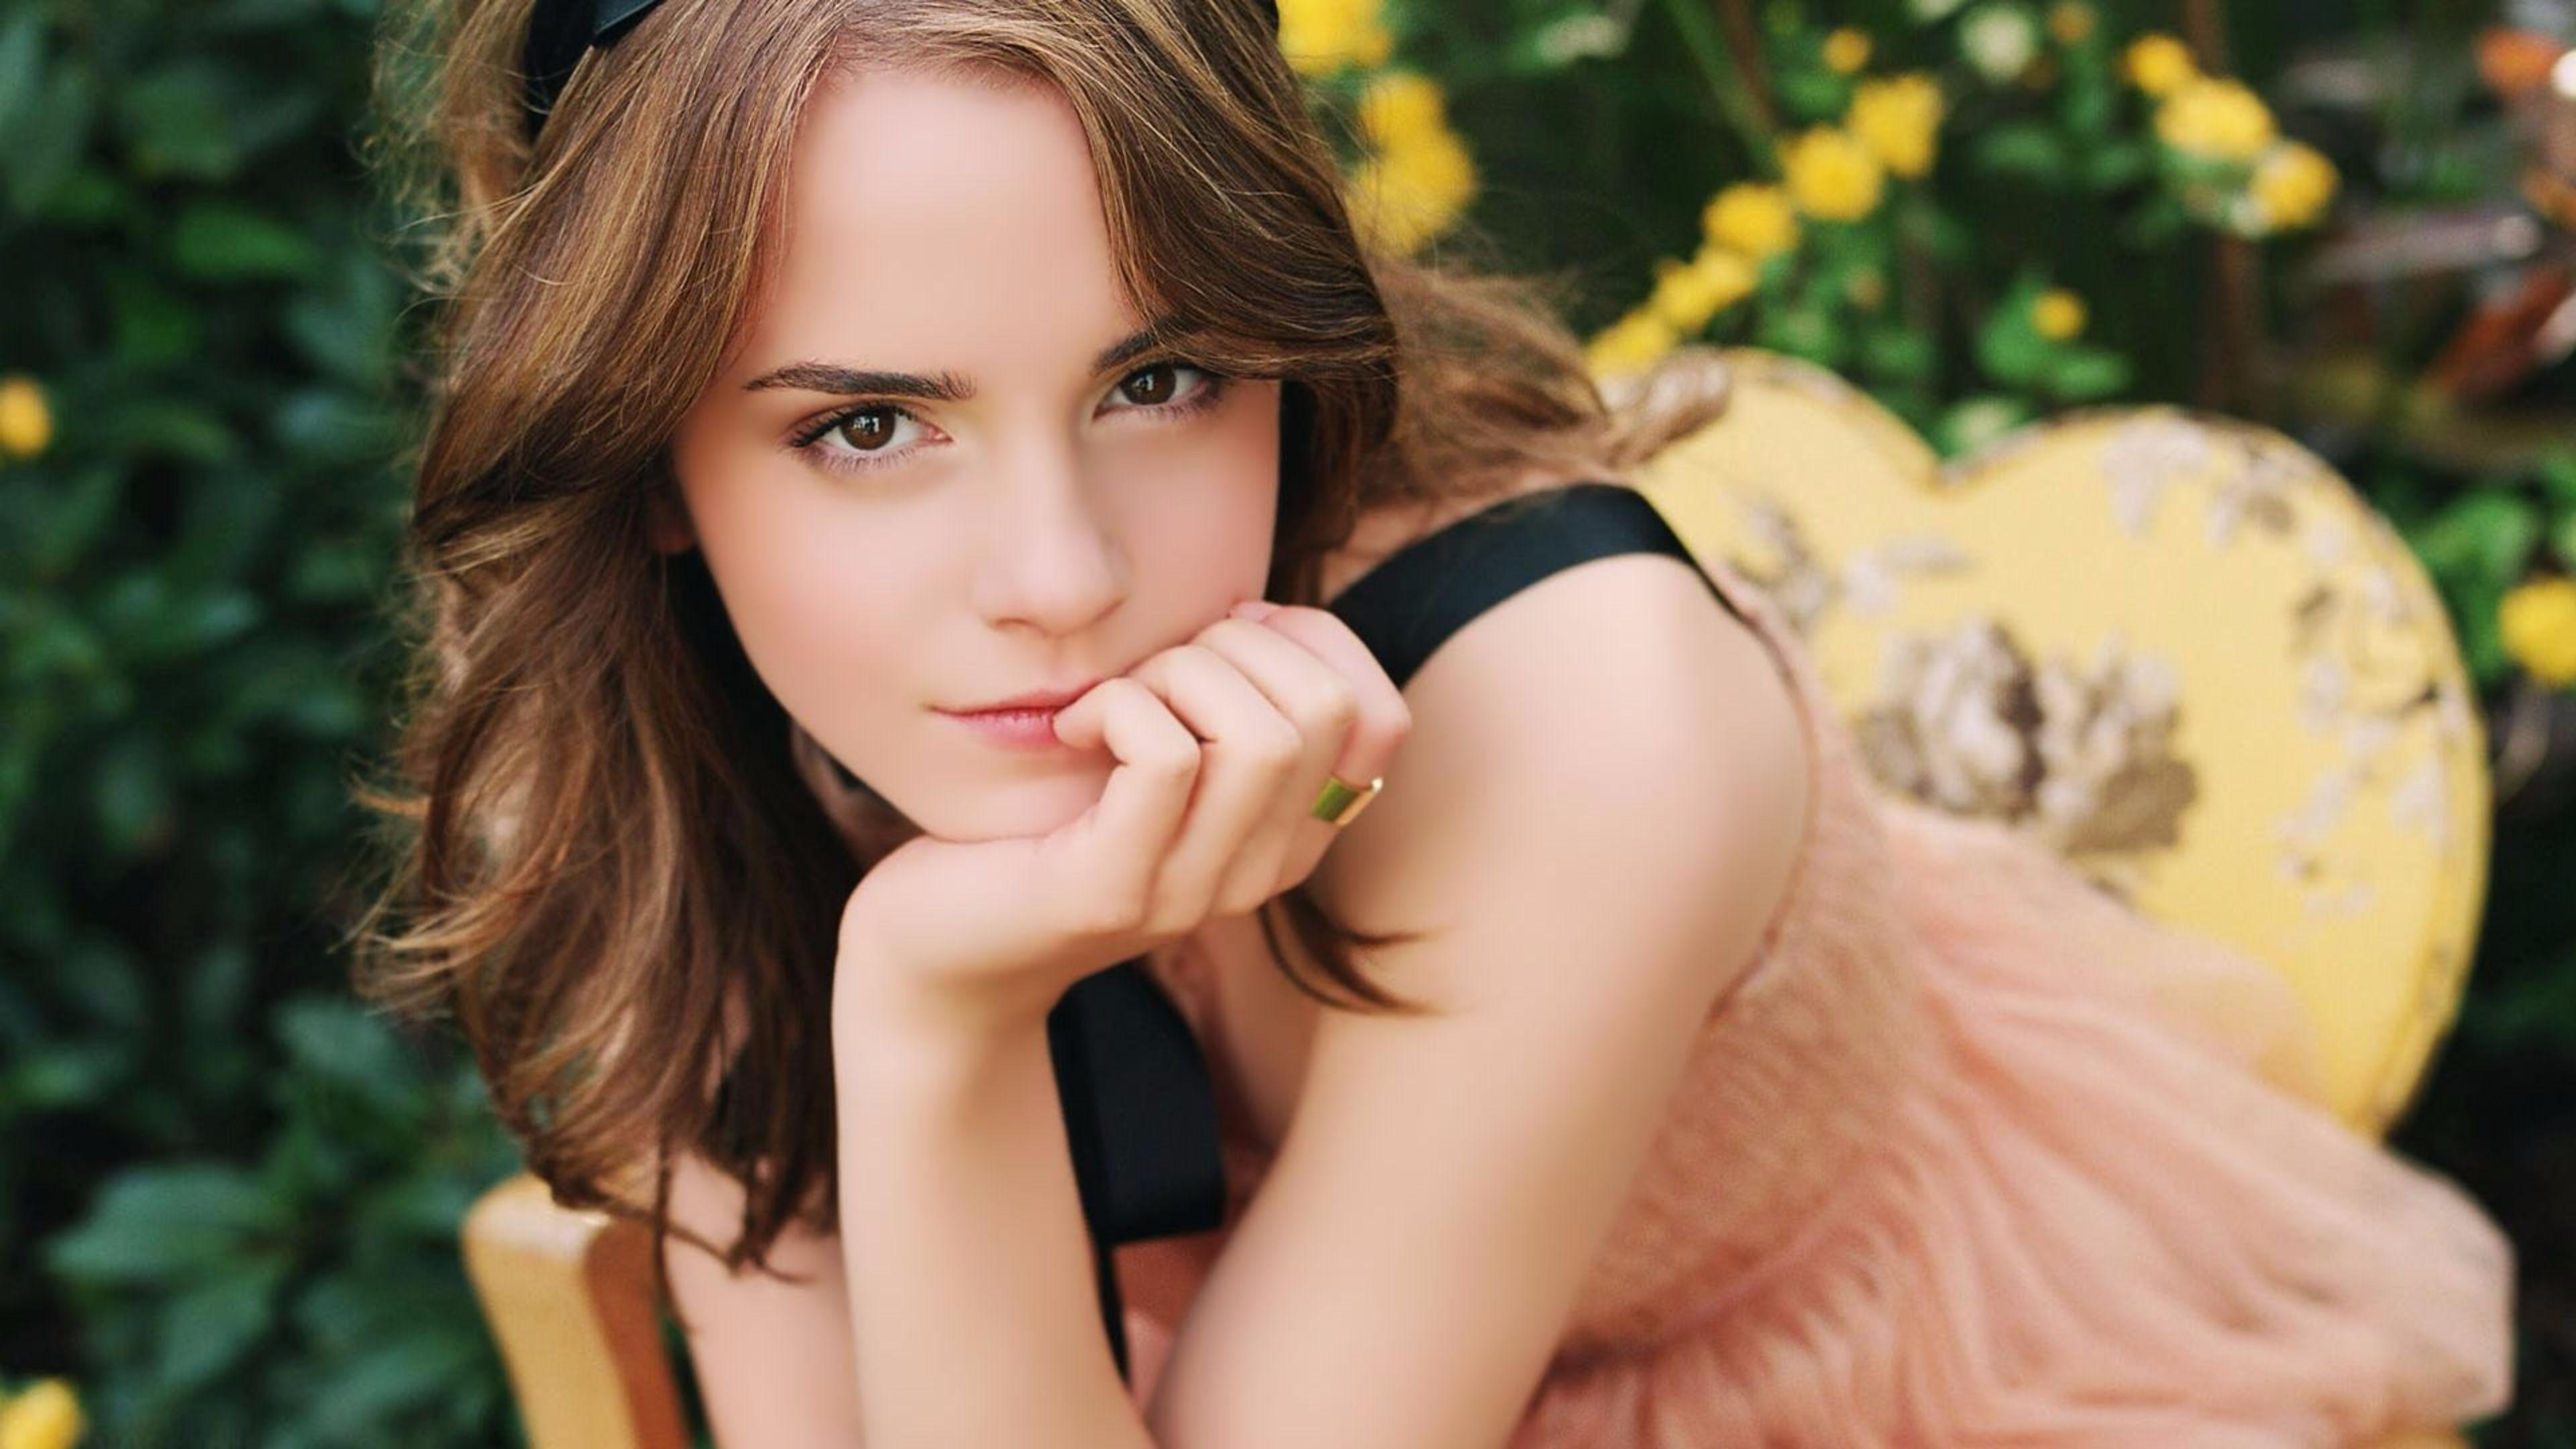 Emma Watson 4K Wallpaper. Free 4K Wallpaper